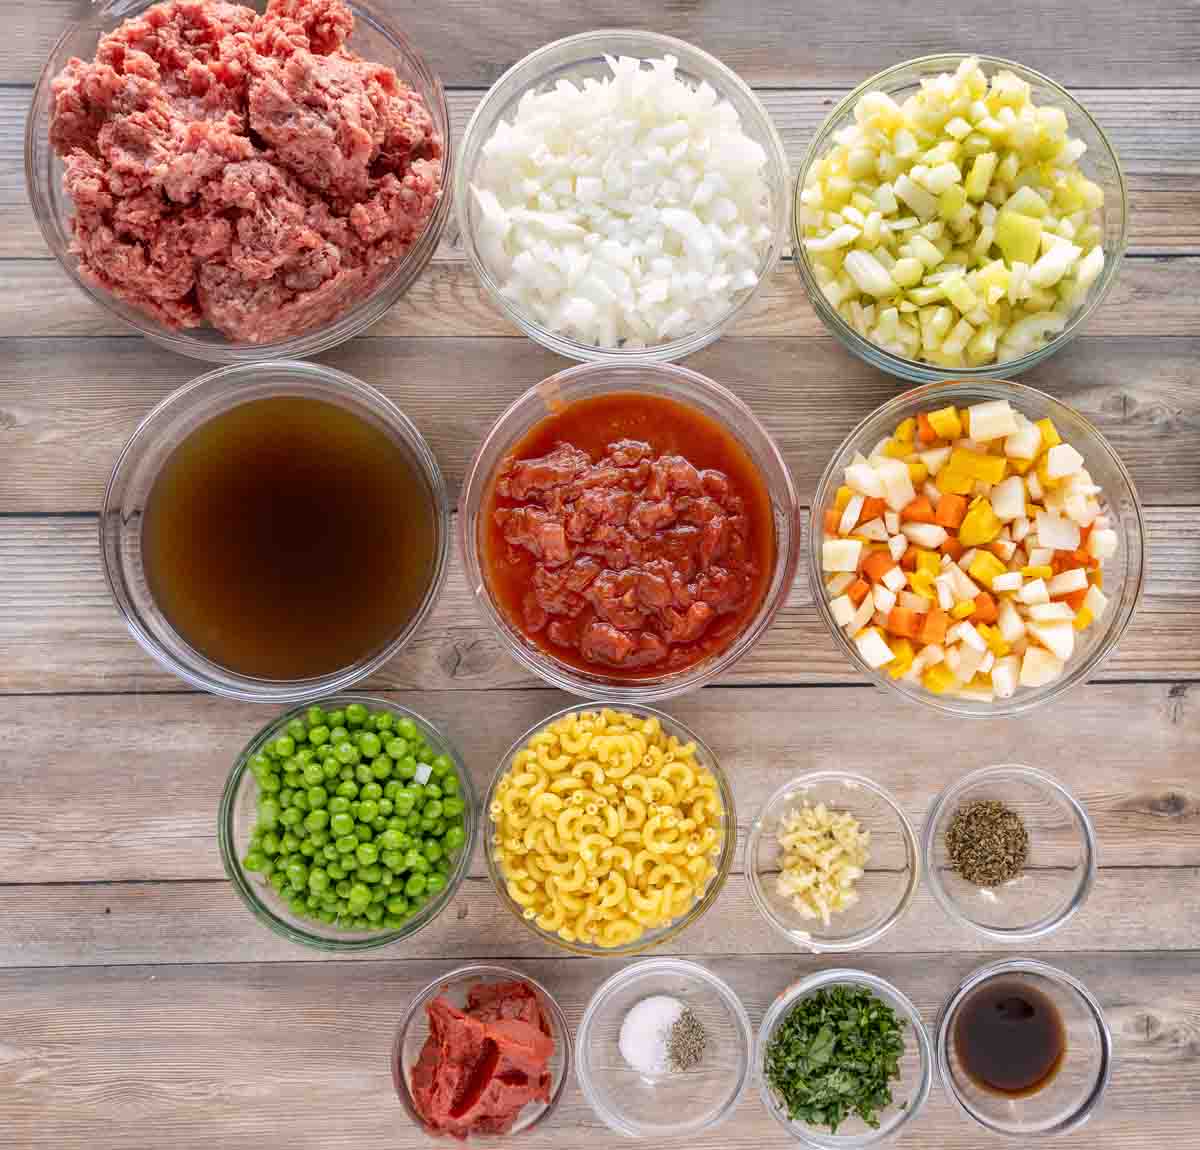 Ingredients to make Hamburger Soup